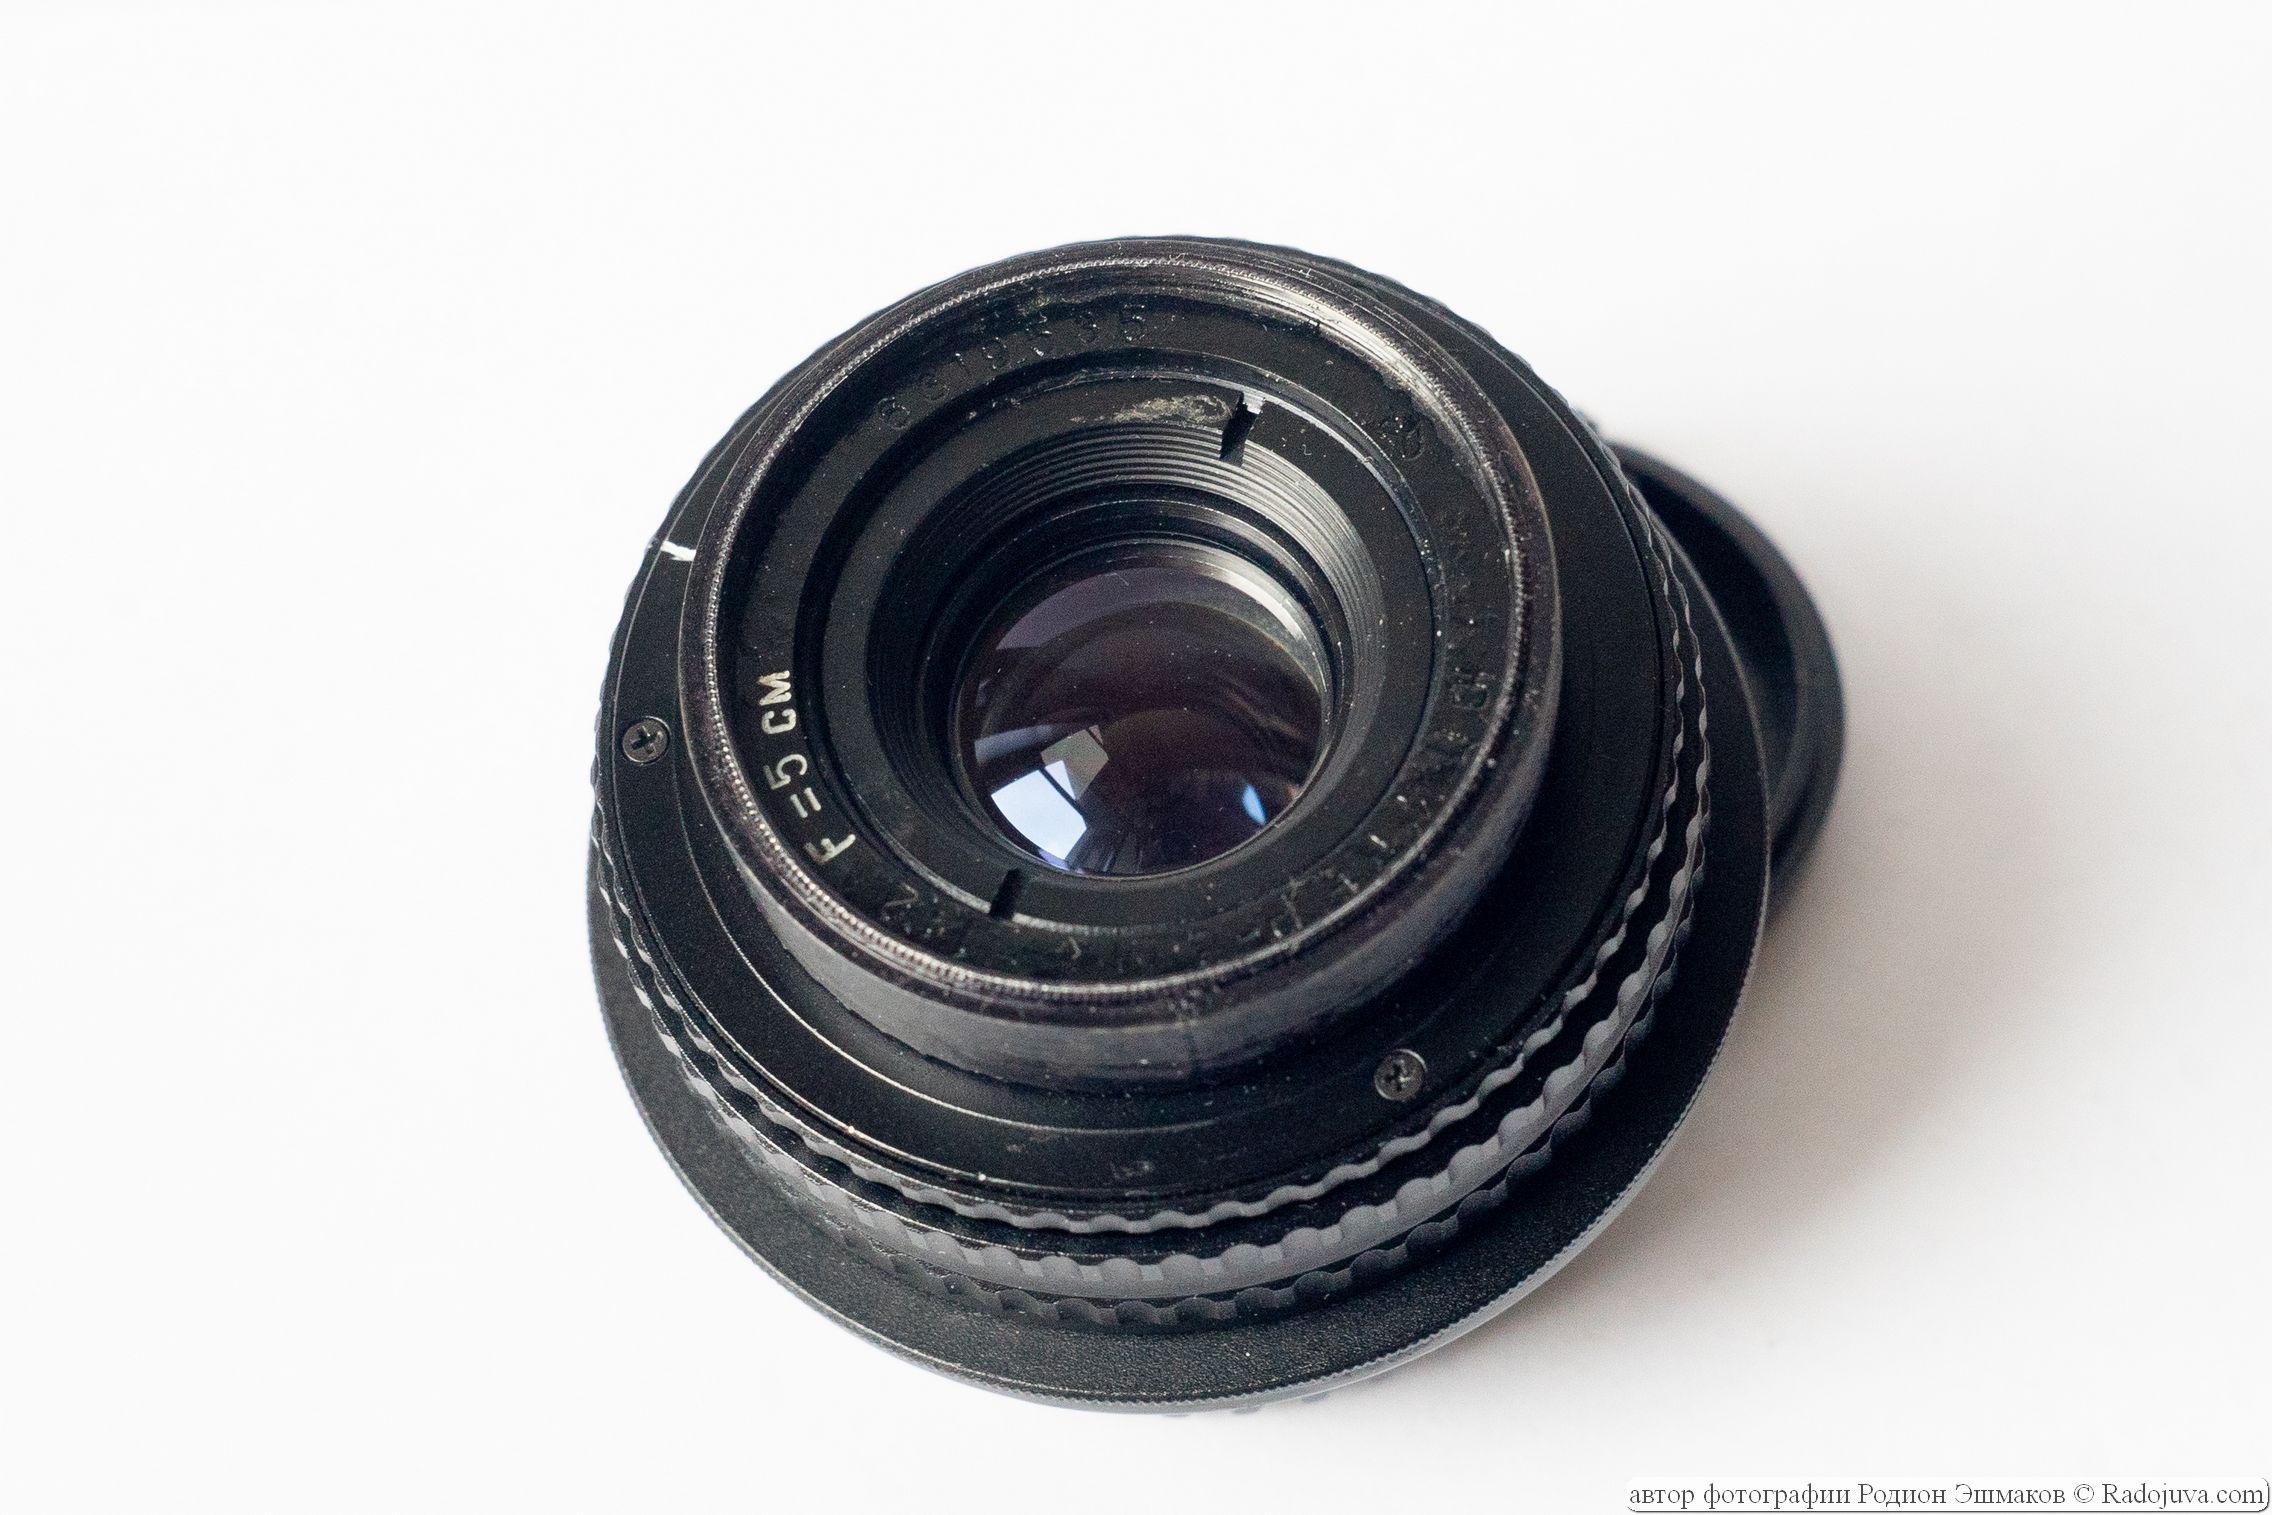 Vega-11U 3/54 (MMZ) - enlarger lens adapted for modern cameras